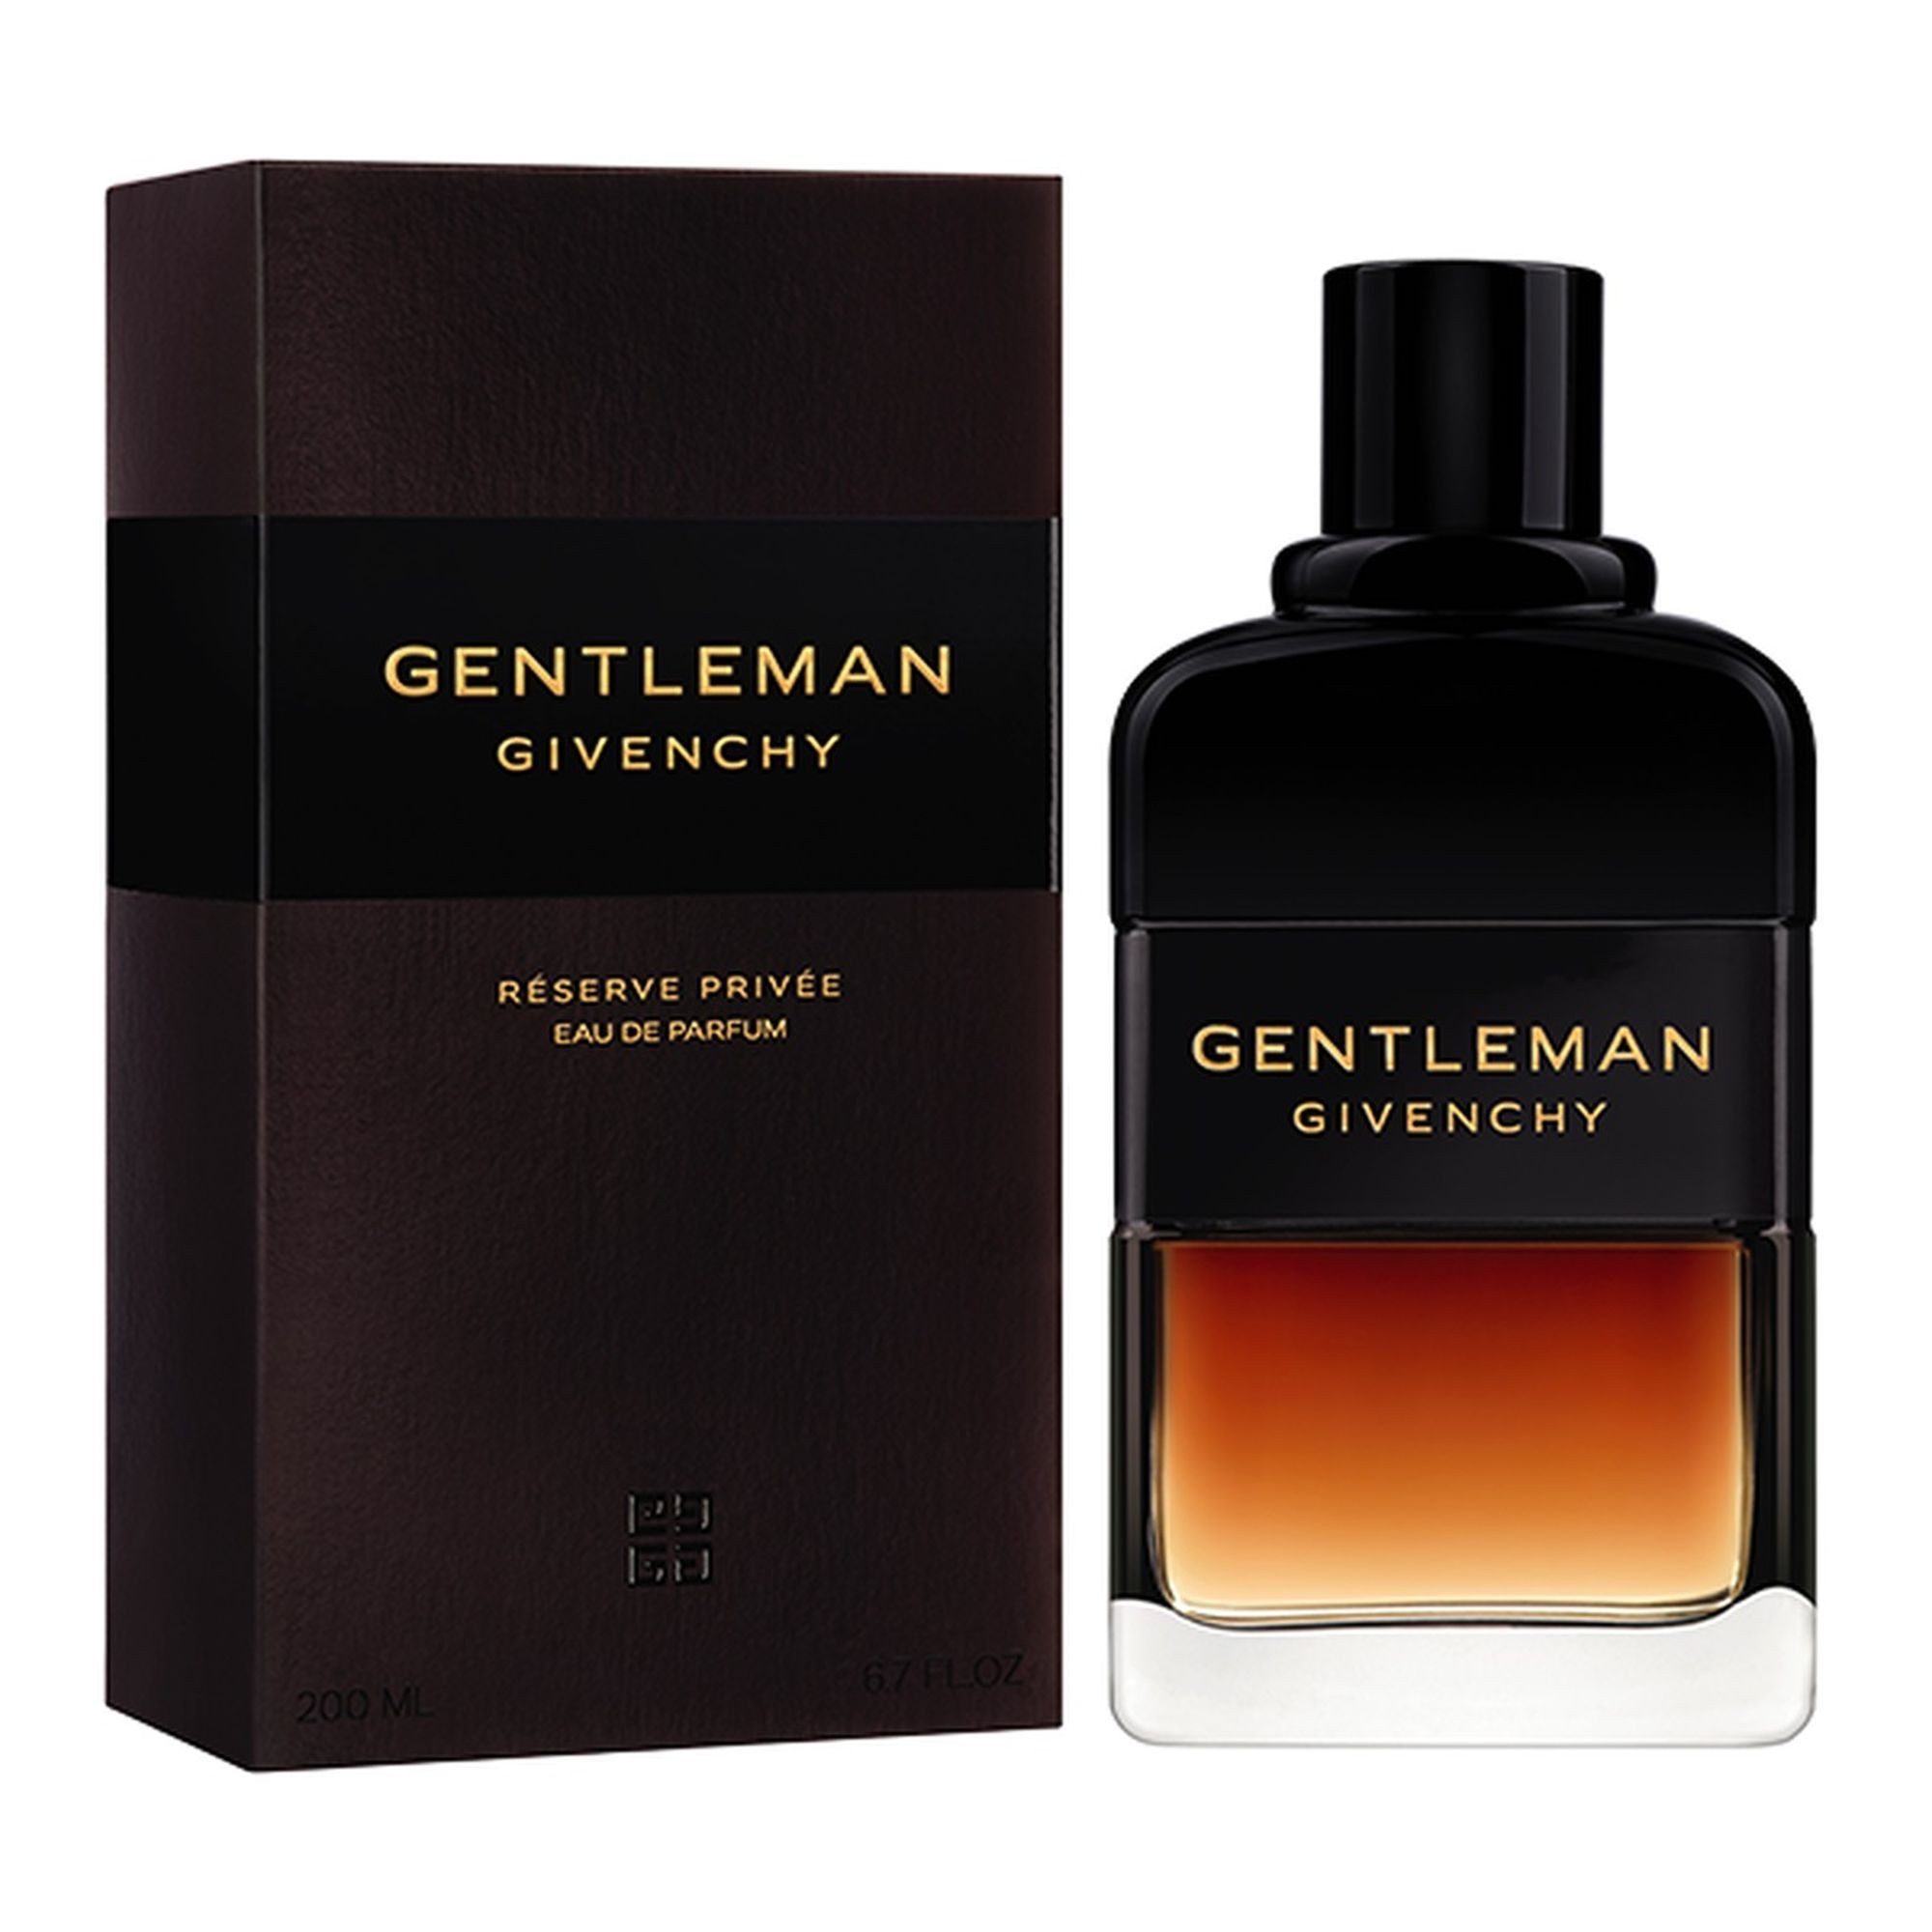 GIVENCHY Eau de Parfum Gentleman Reserve Privée